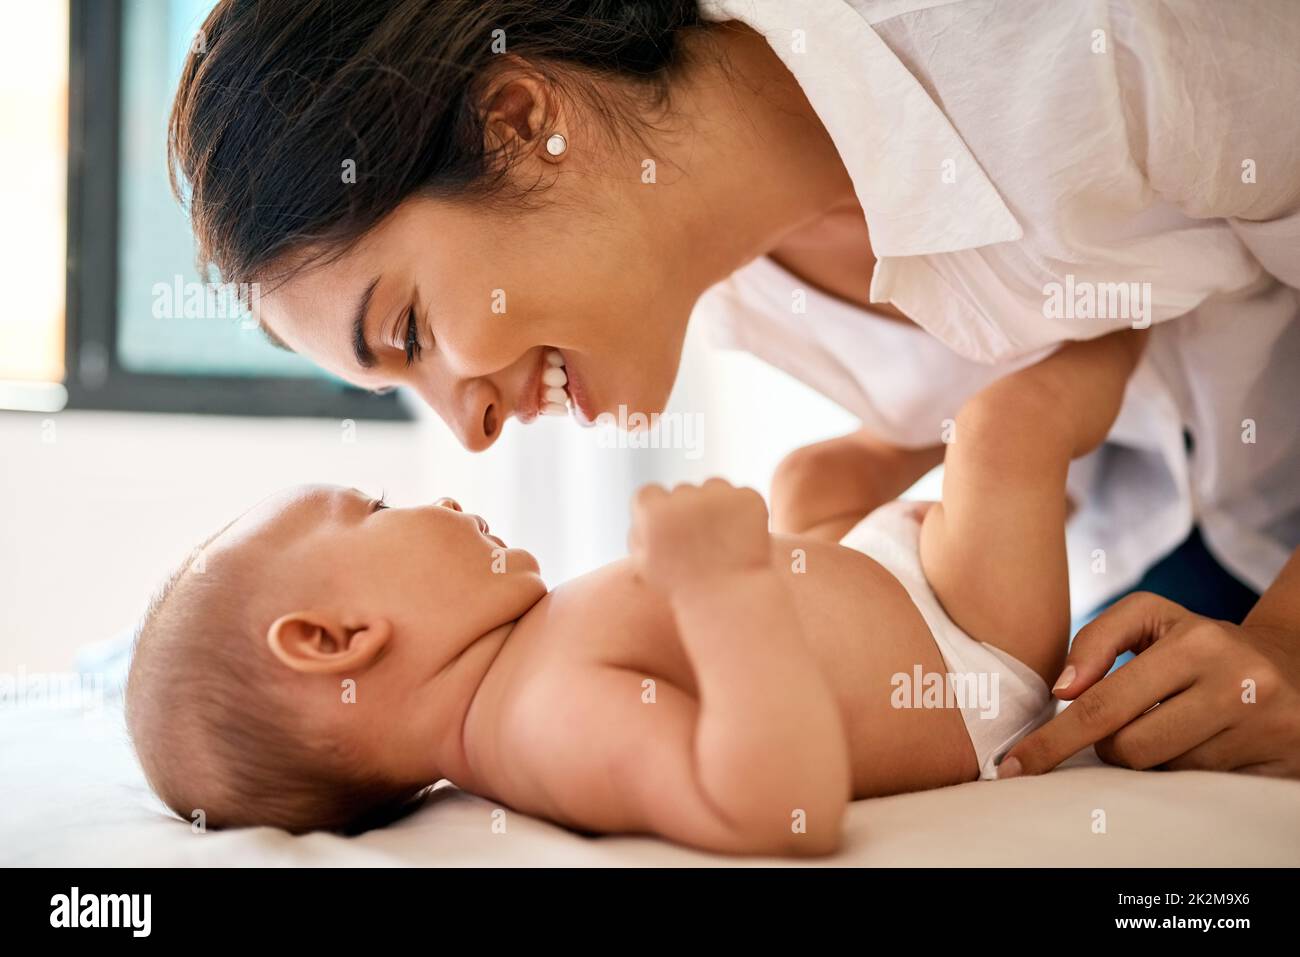 Et tout d'un coup vous avez été mon tout. Photo d'une mère heureuse qui se joint à son bébé garçon à la maison. Banque D'Images